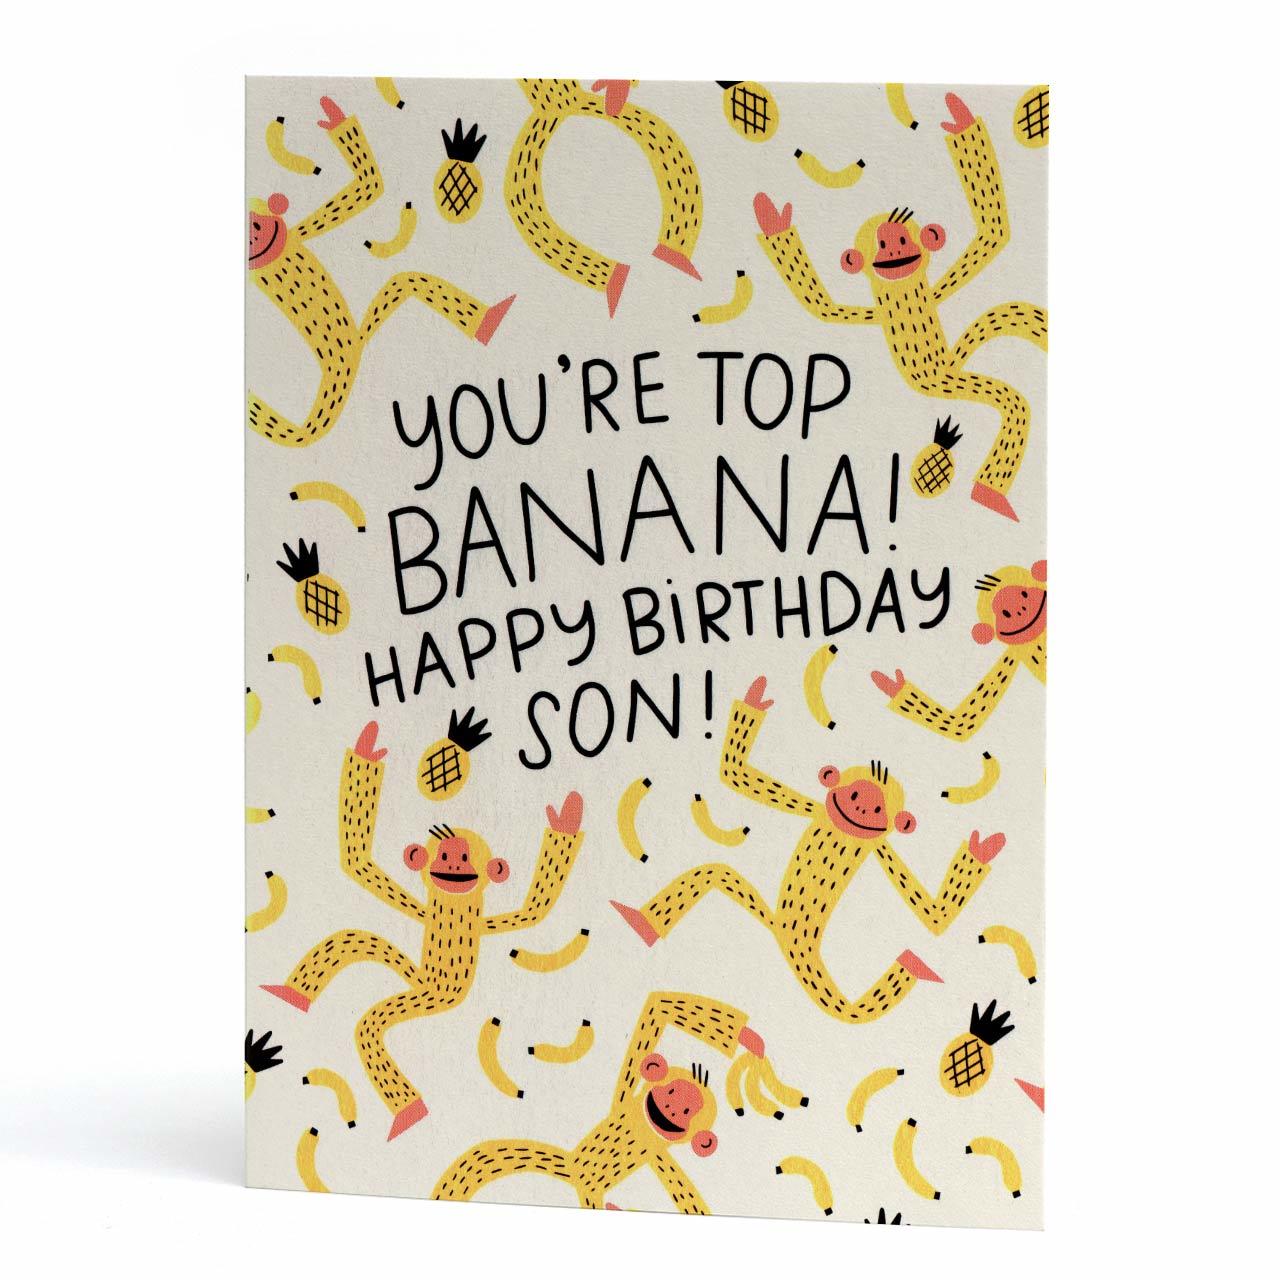 Top Banana Birthday Son Greeting Card